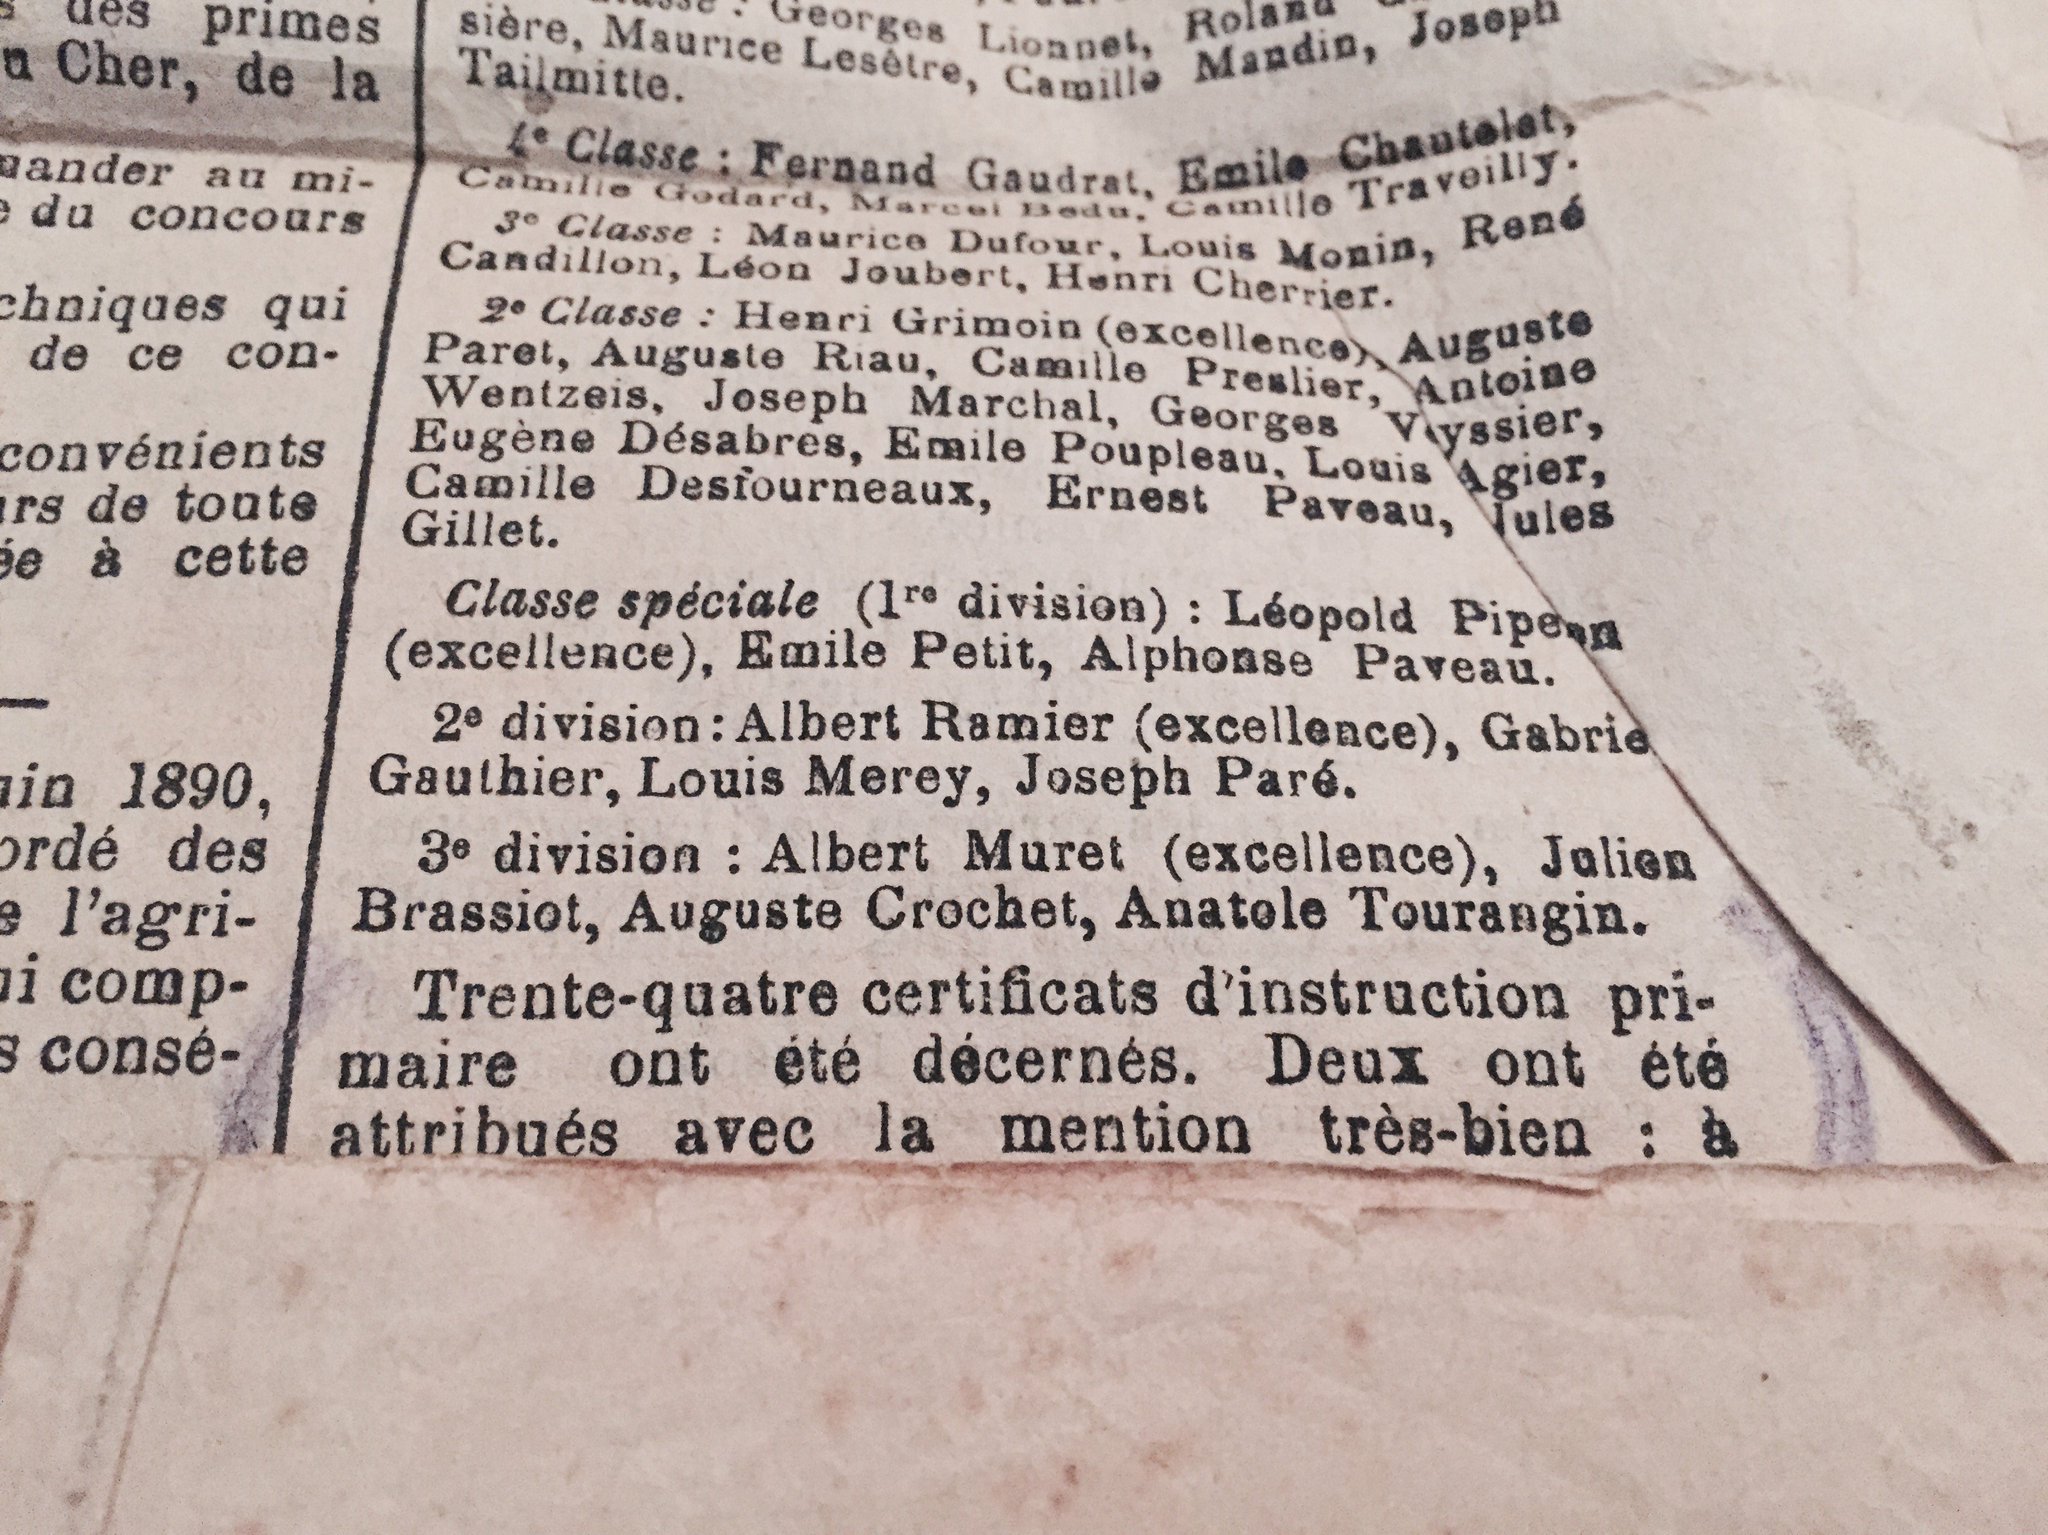 Dans le journal de 1895, j'apprends que ton oncle René a obtenu une mention très bien à son certificat d'instruction primaire https://t.co/NWcJITCx9U